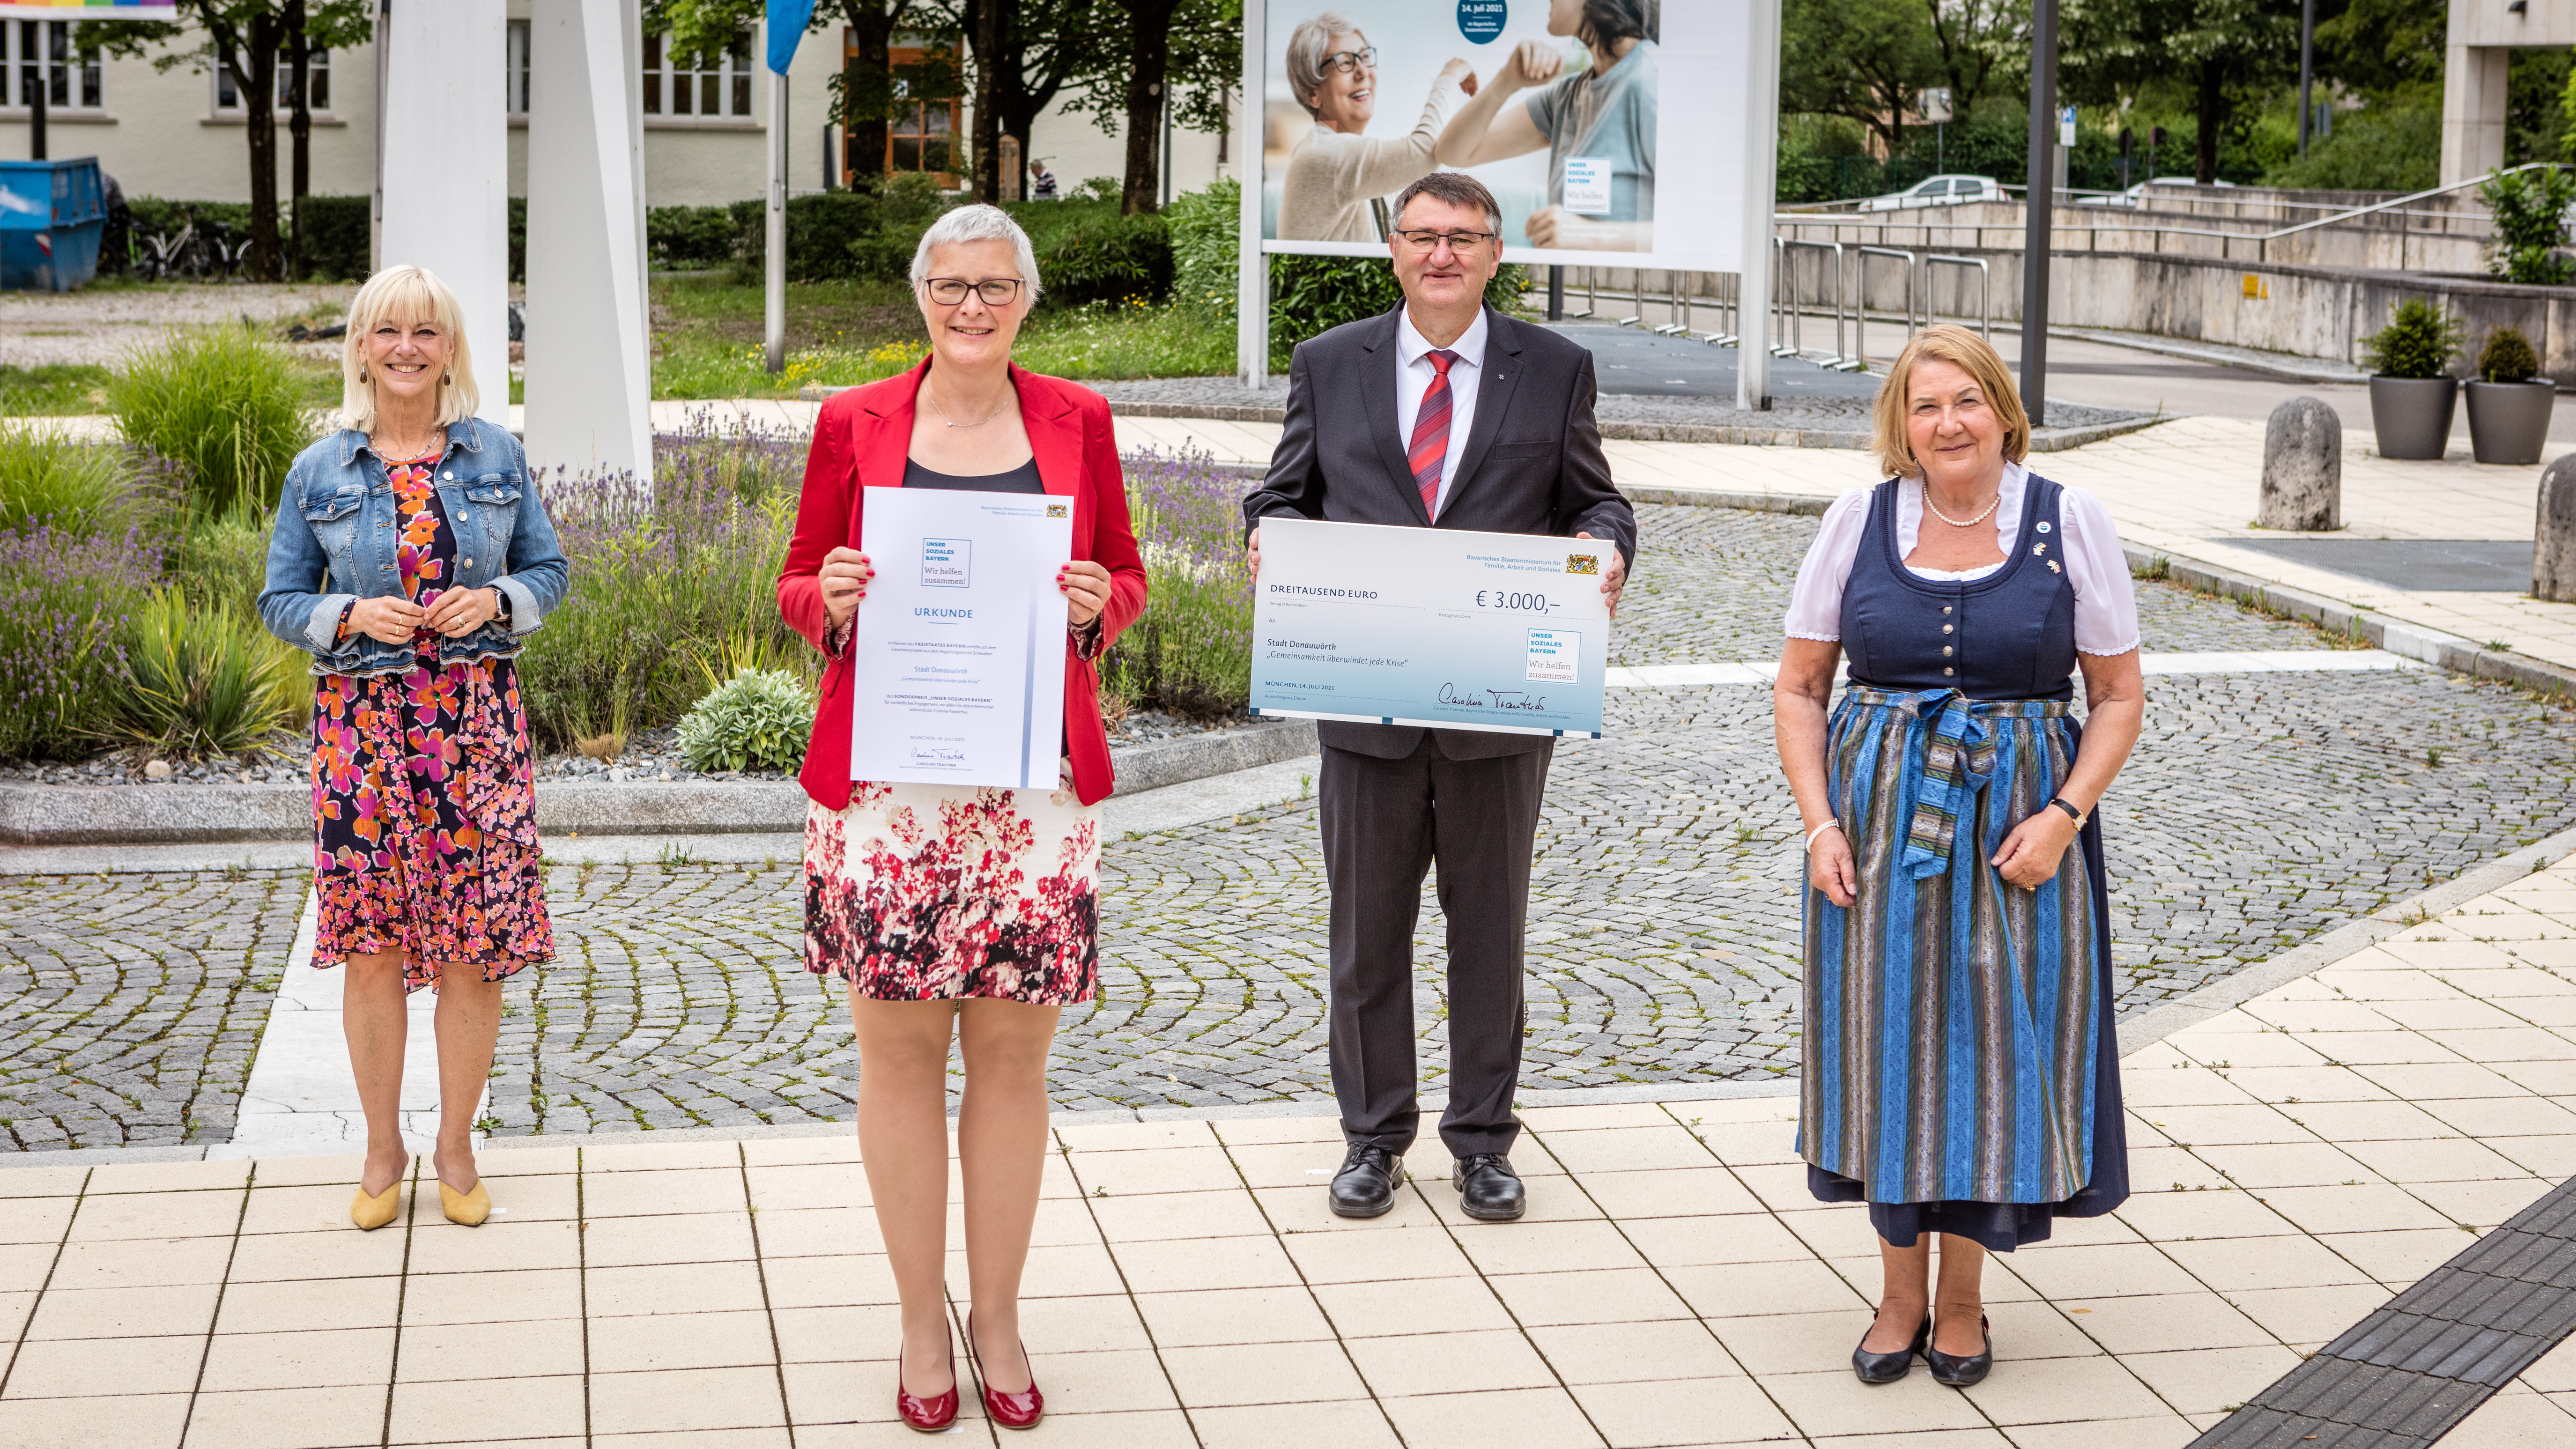 Die ehemalige Staatsministerin Carolina Trautner steht neben drei Preisträgerinnen und einem Preisträger des Gewinnerprojekts „Gemeinsamkeit überwindet jede Krise“ der Stadt Donauwörth. Eine von ihnen hält eine Urkunde in den Händen, einer einen Scheck.  